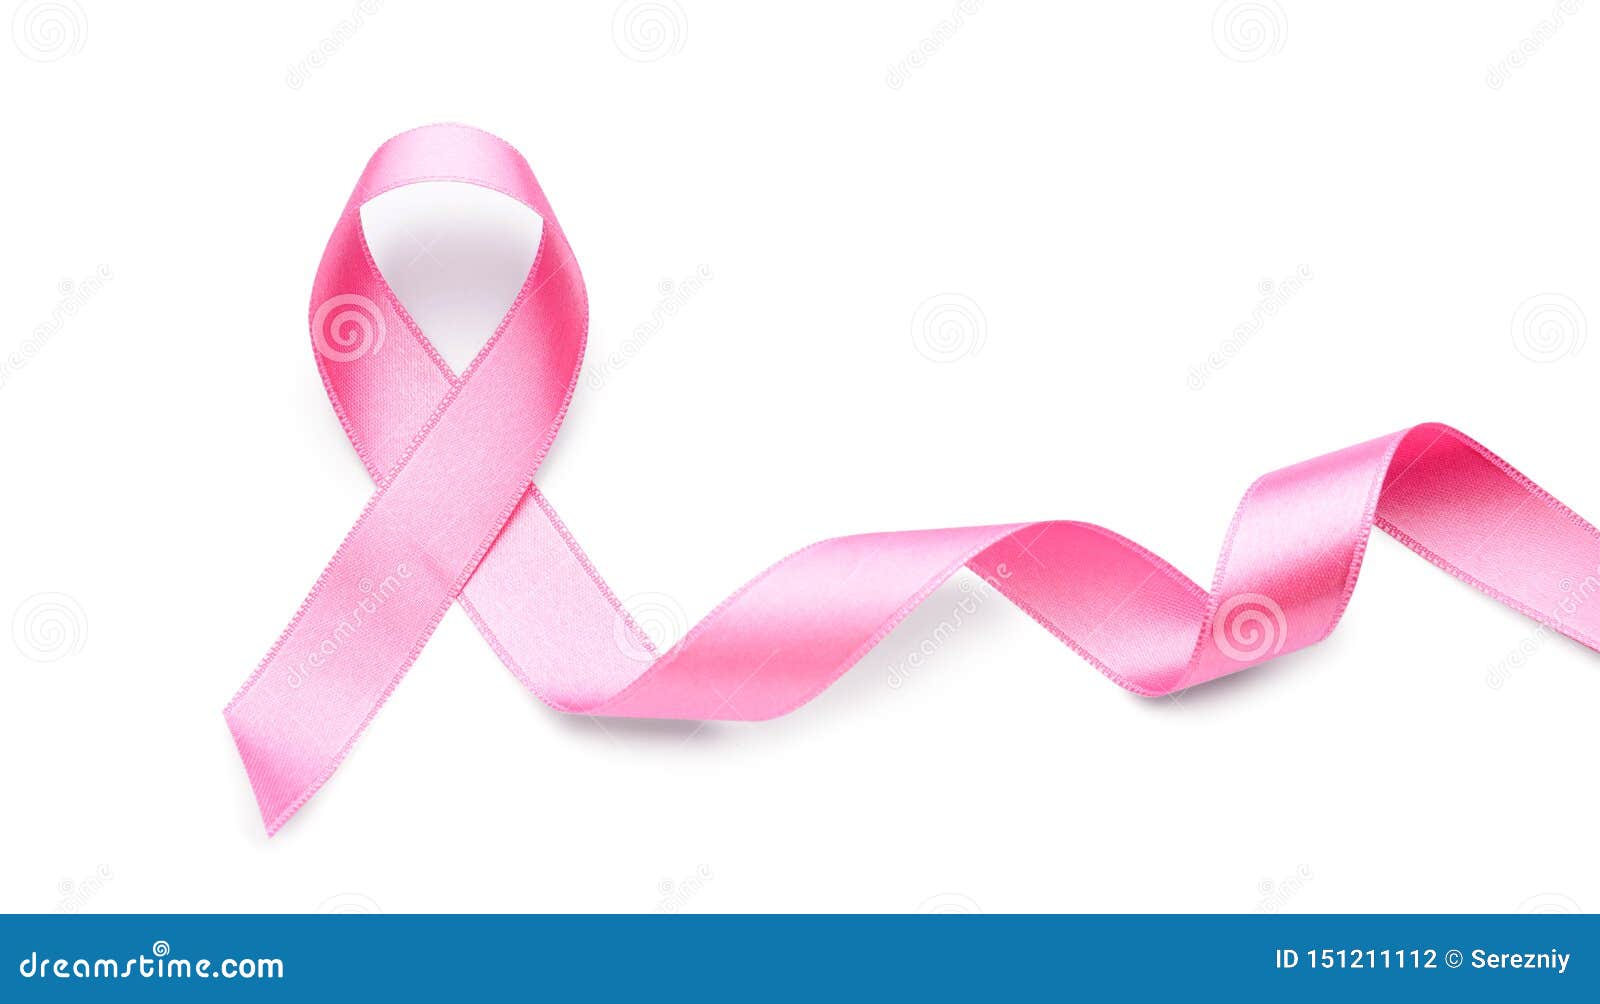 Nếu bạn đang quan tâm đến sức khỏe của chị em phụ nữ, hãy đến xem ngay tấm nền nơ hồng trên nền trắng này. Chứa đựng thông điệp về sự quan tâm và phòng ngừa ung thư vú, bức ảnh này sẽ giúp lan tỏa giá trị đích thực của tháng nhận thức về ung thư vú.